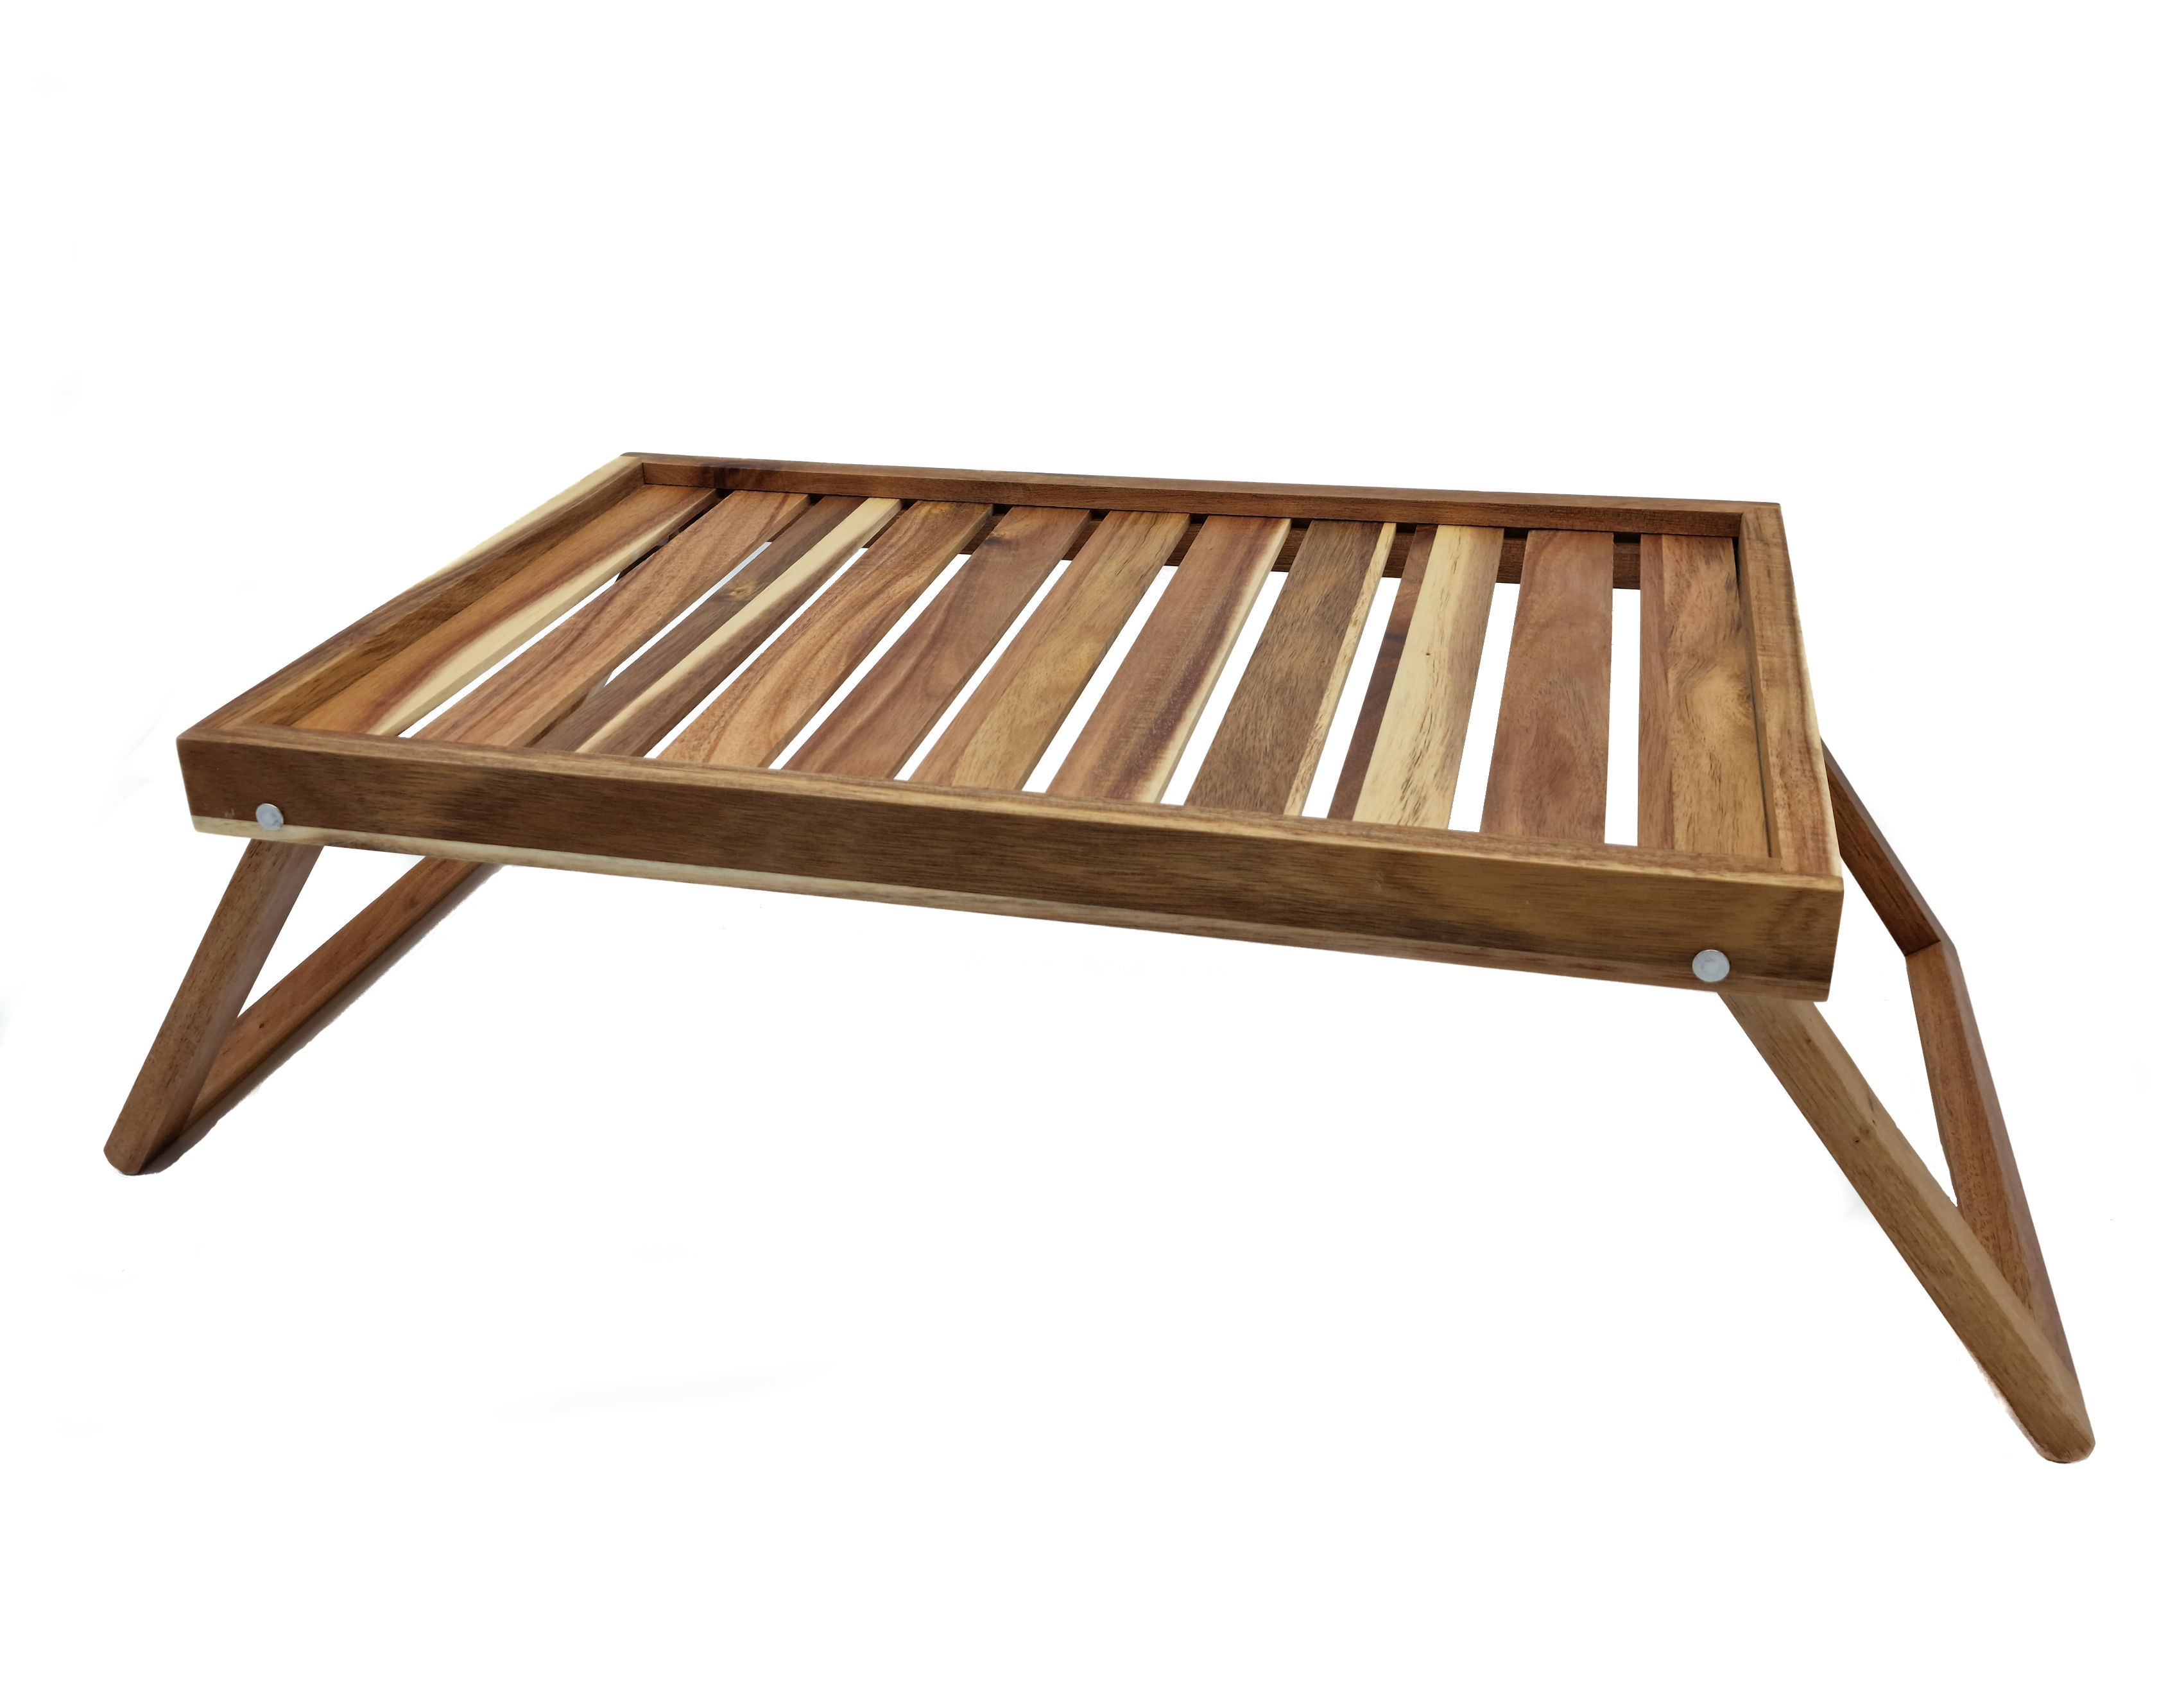 Akazien Bett Tablett klappbar - 49 x 33 cm - Holz Servier Frühstücks Laptop Tisch mit ausklappbarem Gestell